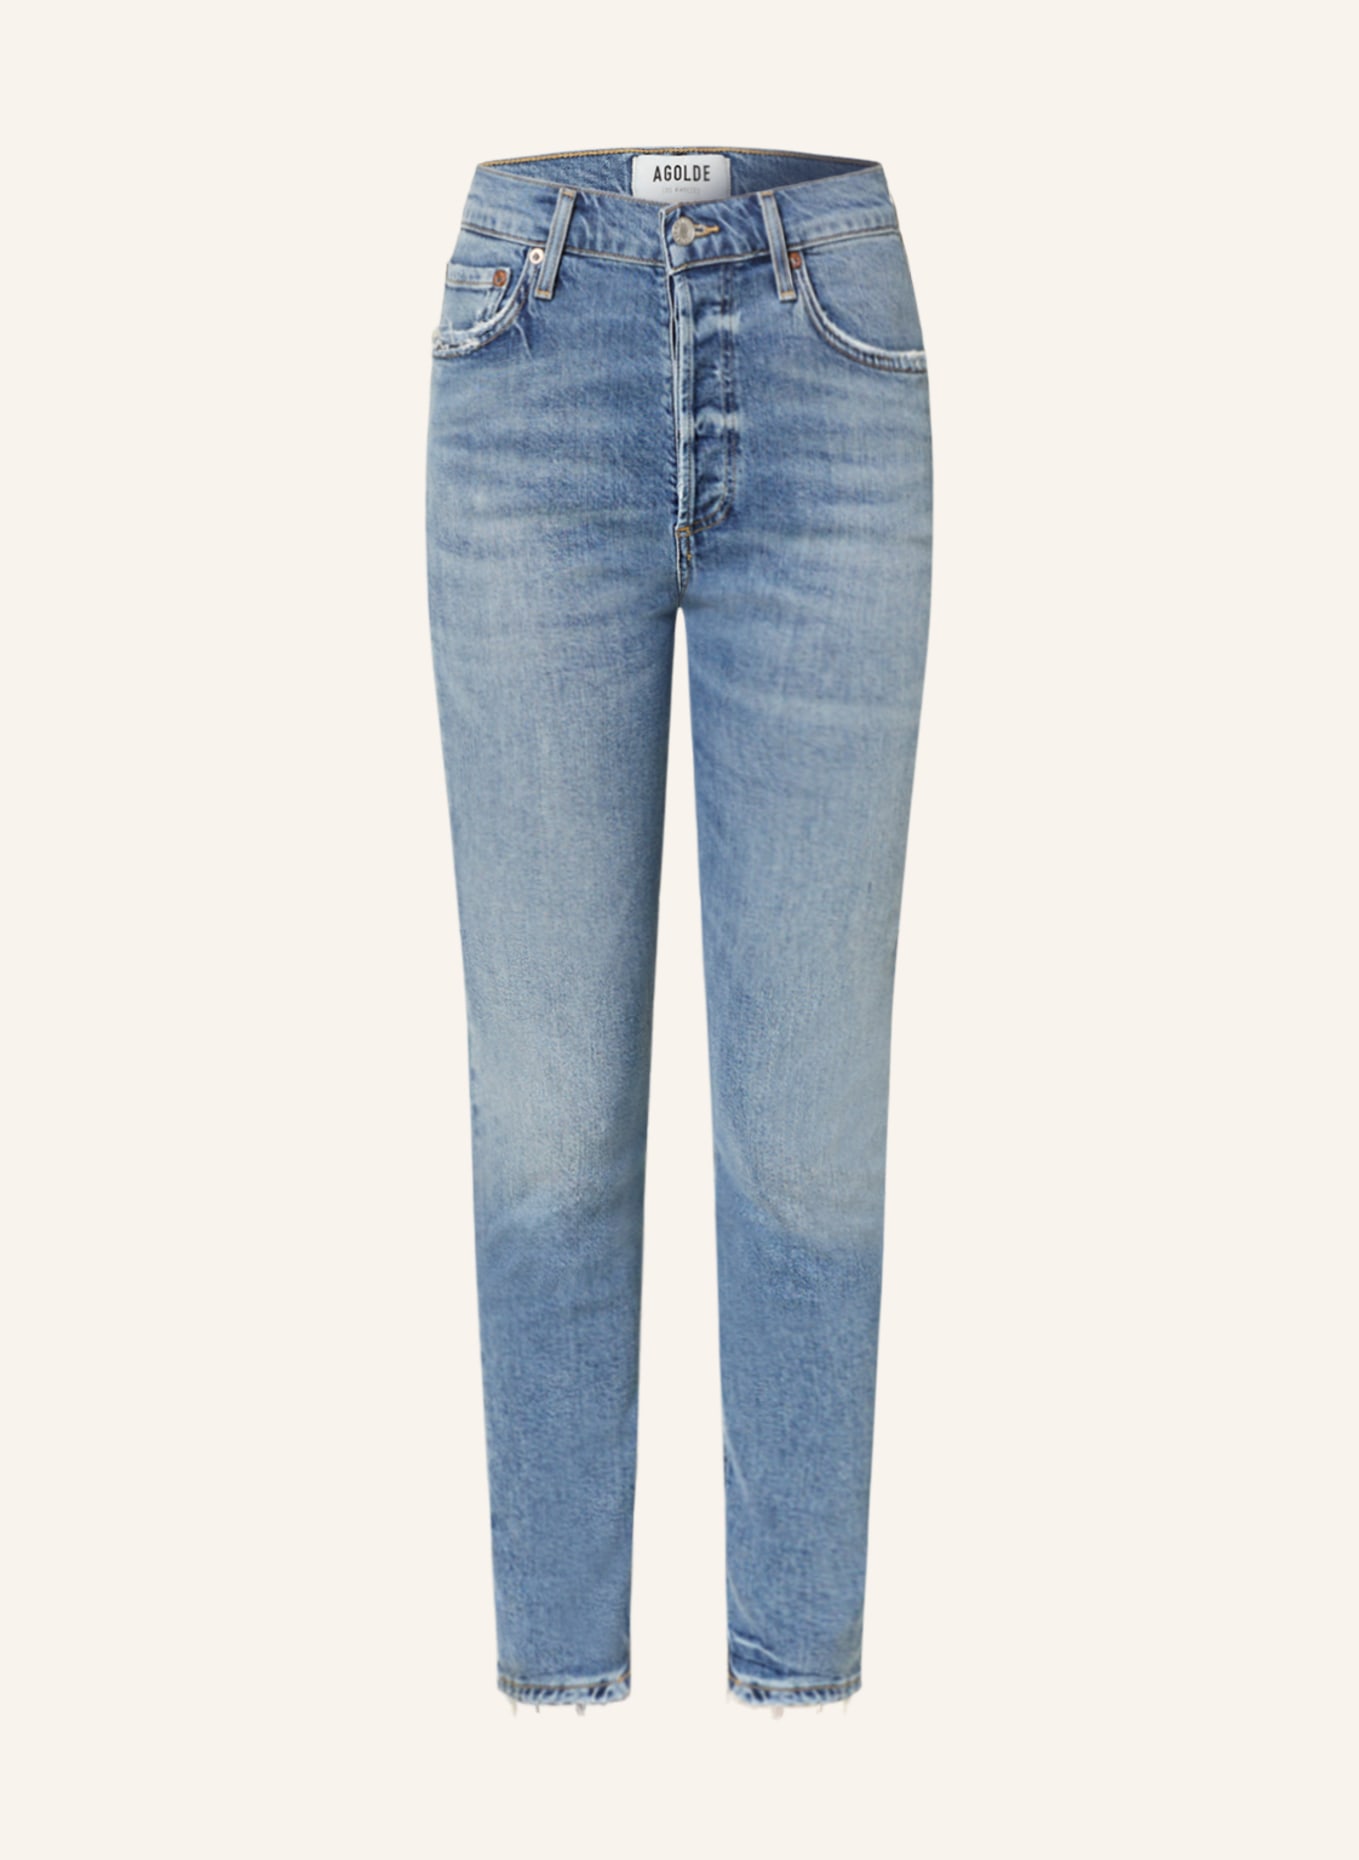 AGOLDE Jeans NICO, Color: Blame med vint indigo (Image 1)